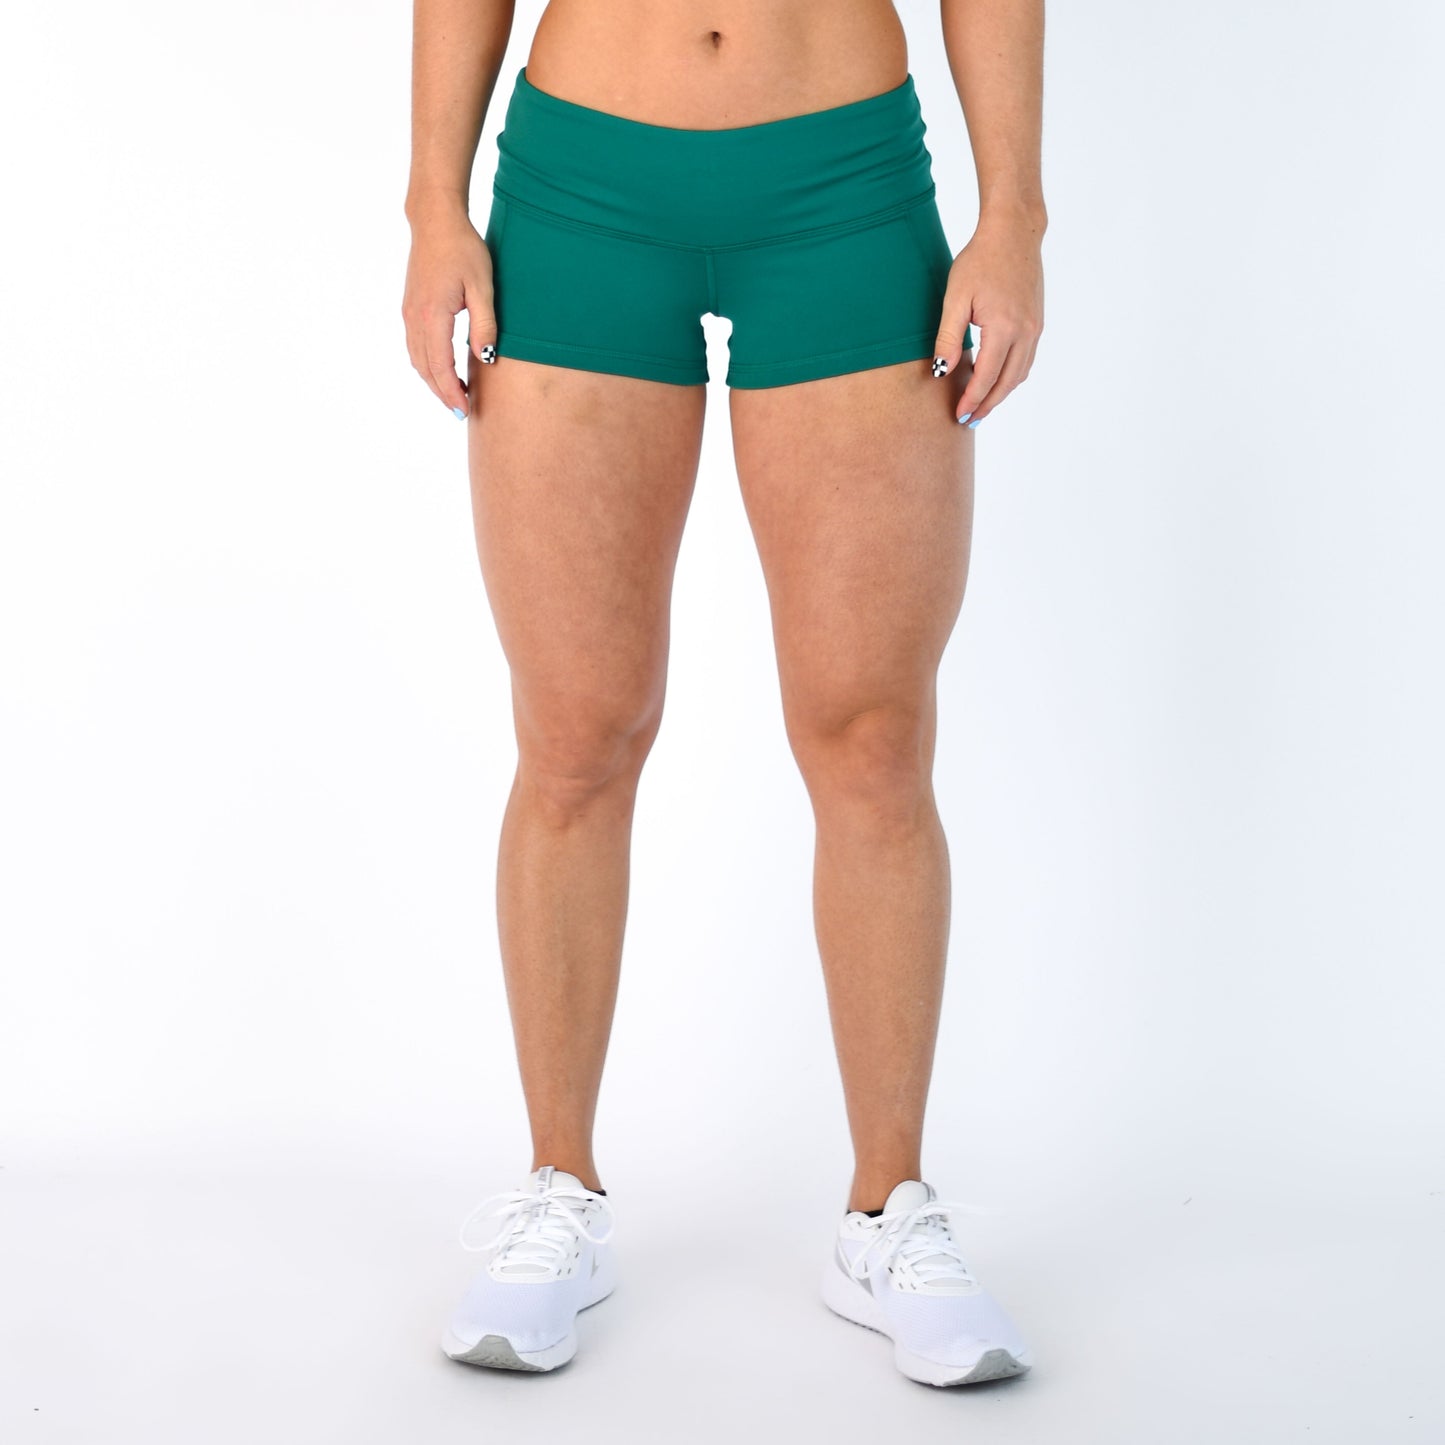 FLEO Emerald Shorts (Low-rise Contour)